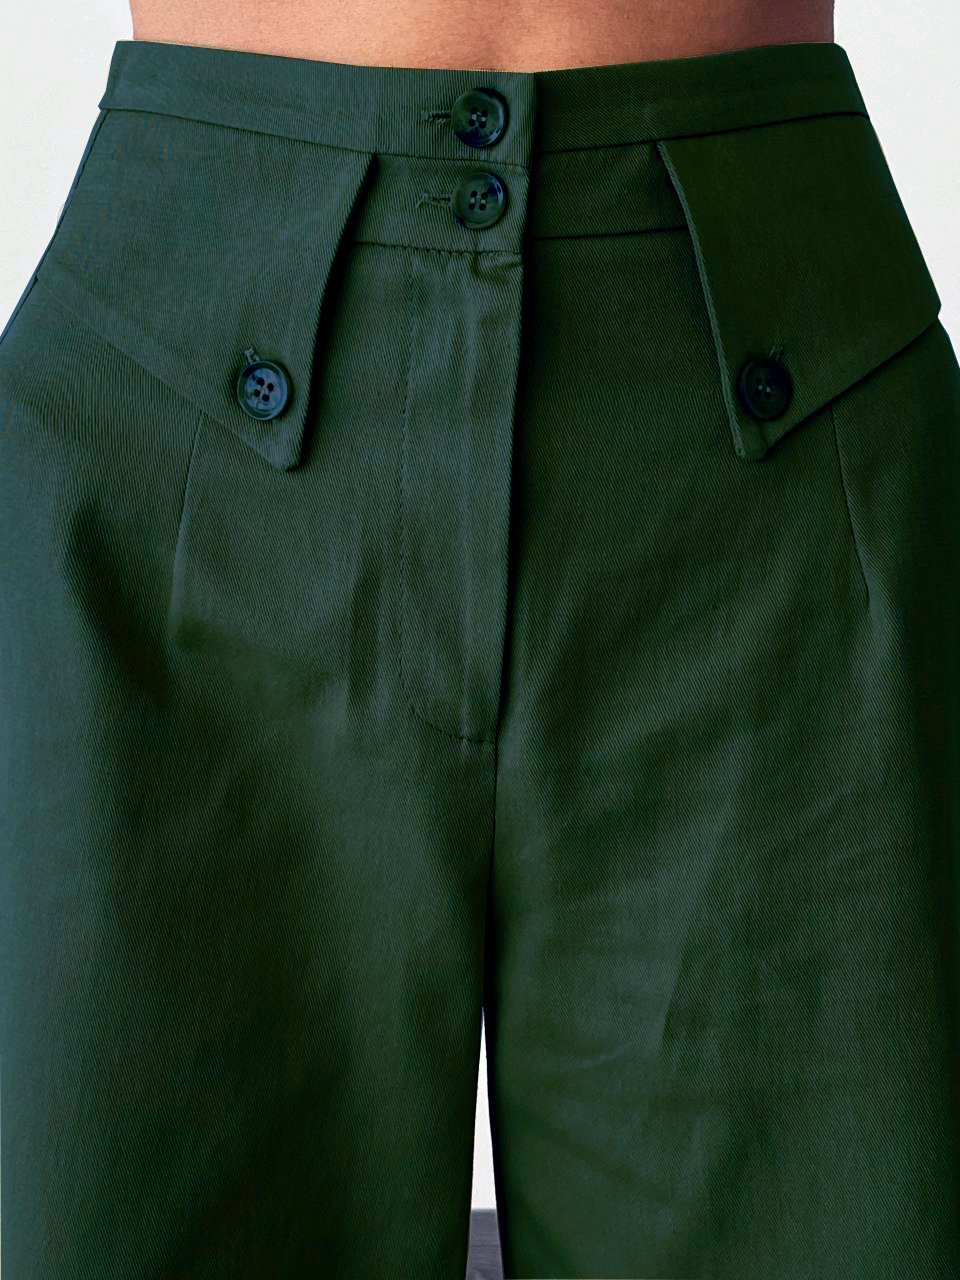 QuQa Çift Düğmeli Kumaş Pantolon-7494 - Yeşil